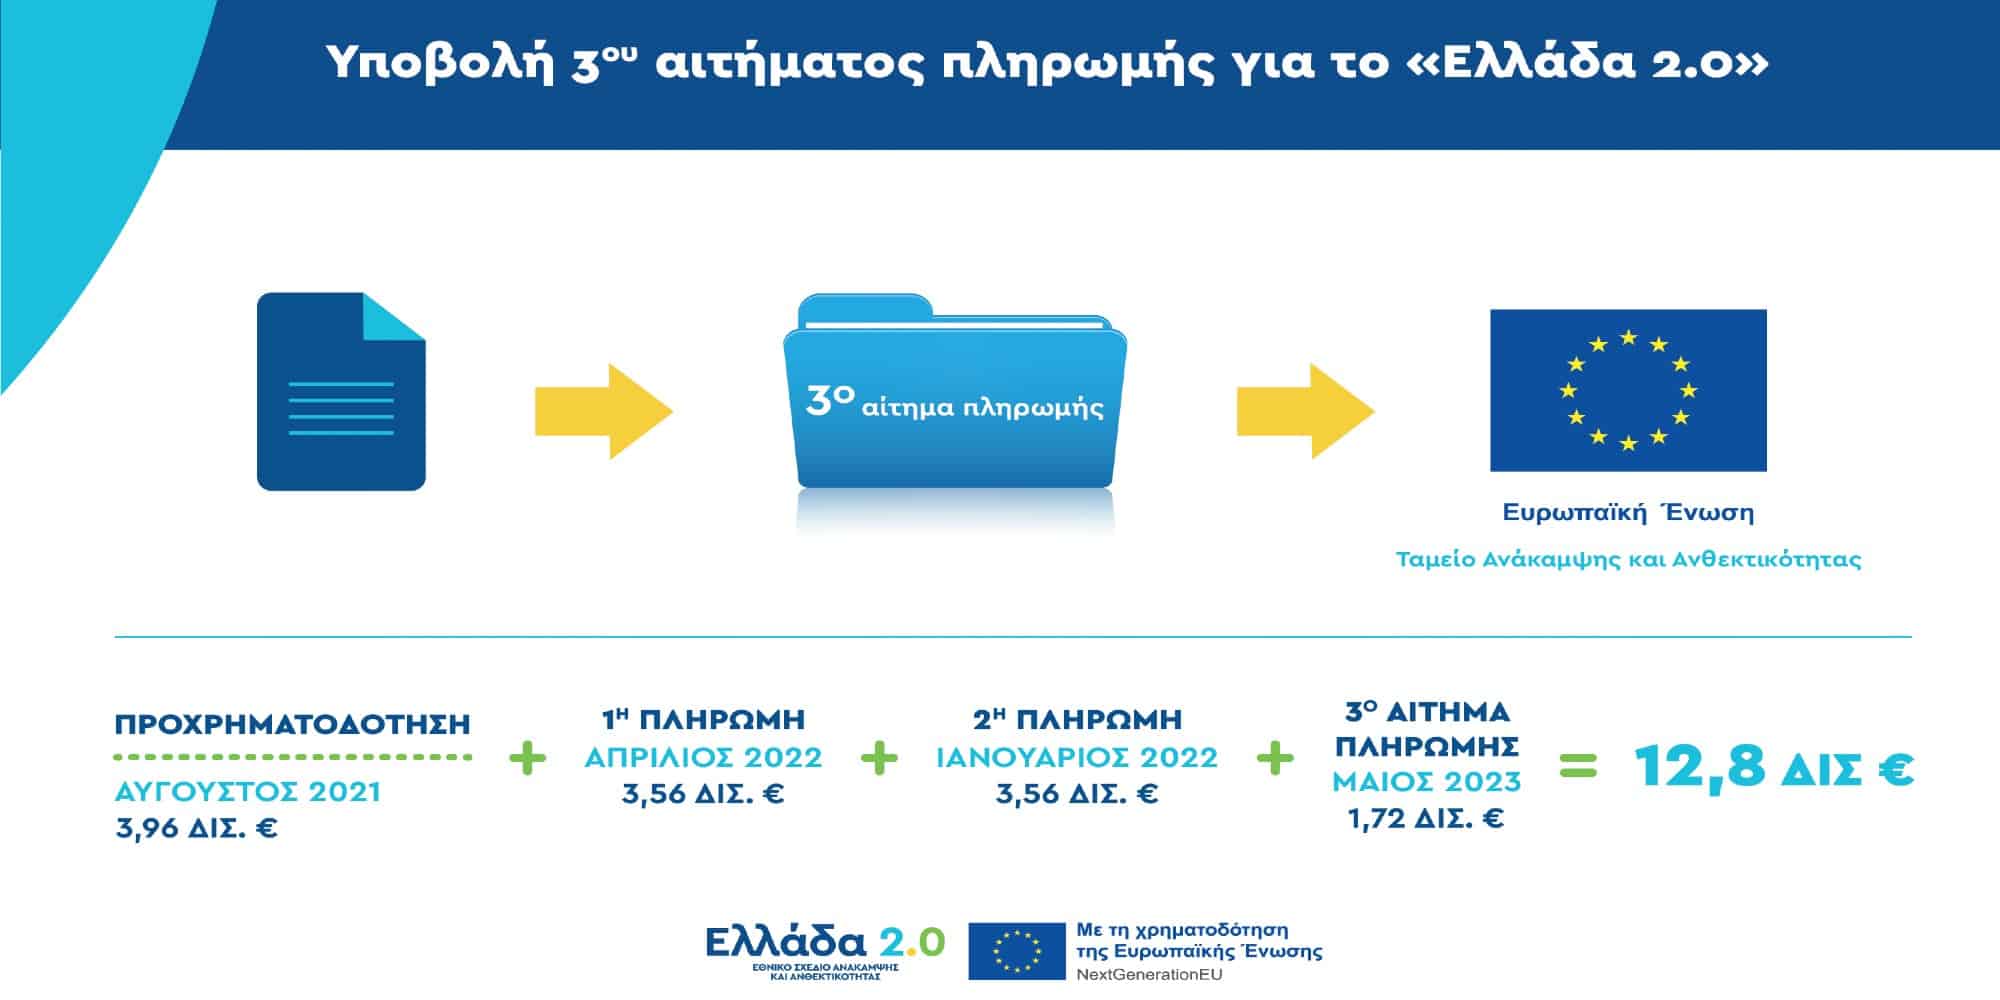 Η Ελλάδα υπέβαλε το τρίτο αίτημα πληρωμής από το Ταμείο Ανάκαμψης ύψους 1,72 δισ. ευρώ  